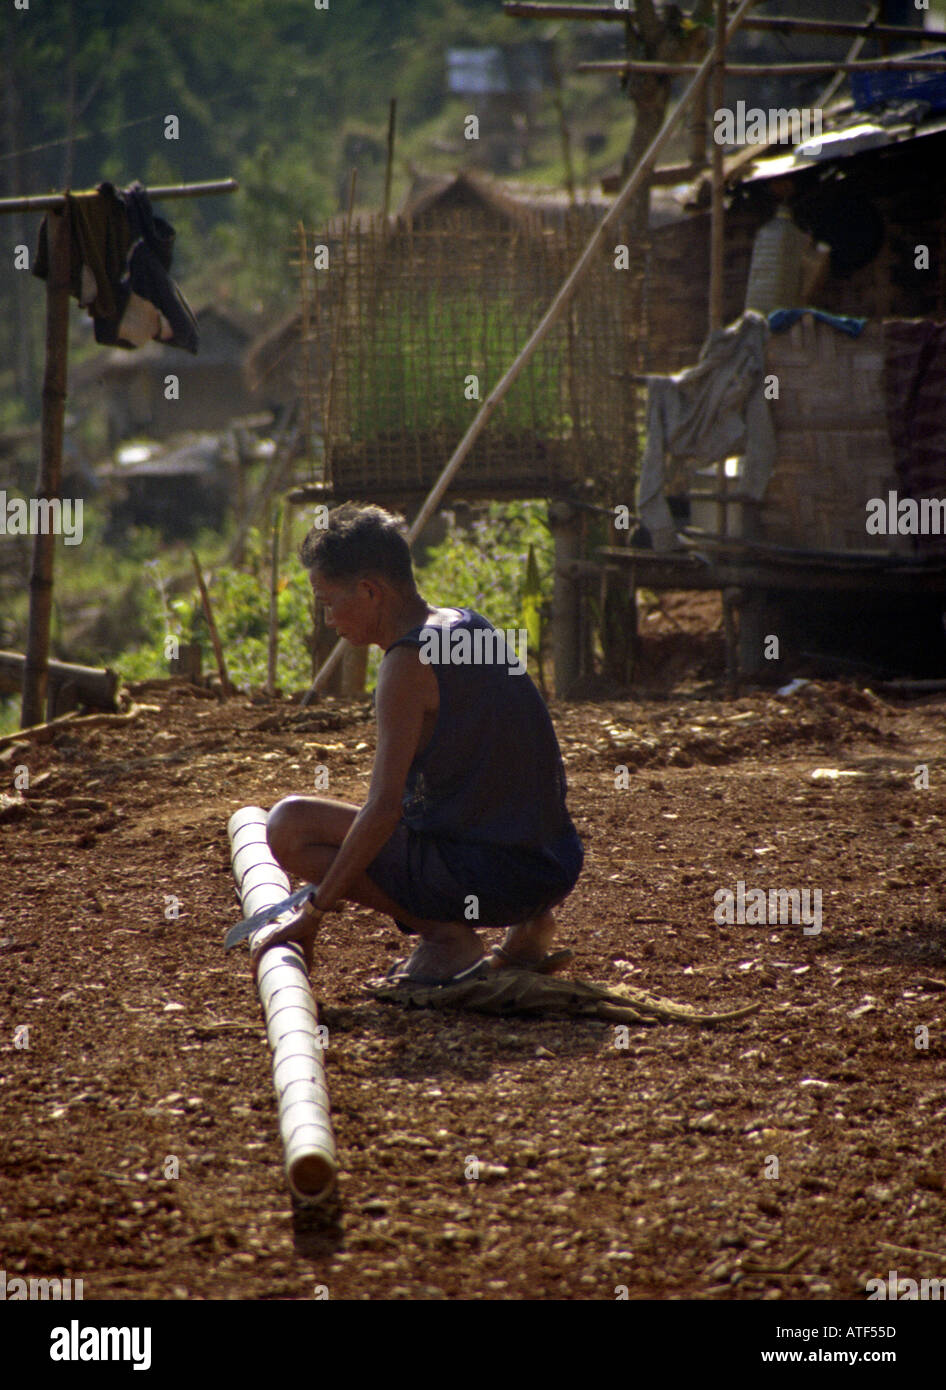 Coupe homme autochtone canne de bambou pour construire cabane en bois soutenue par des pieux dans la région rurale du sud-est Asie Laos Muang Xai Banque D'Images